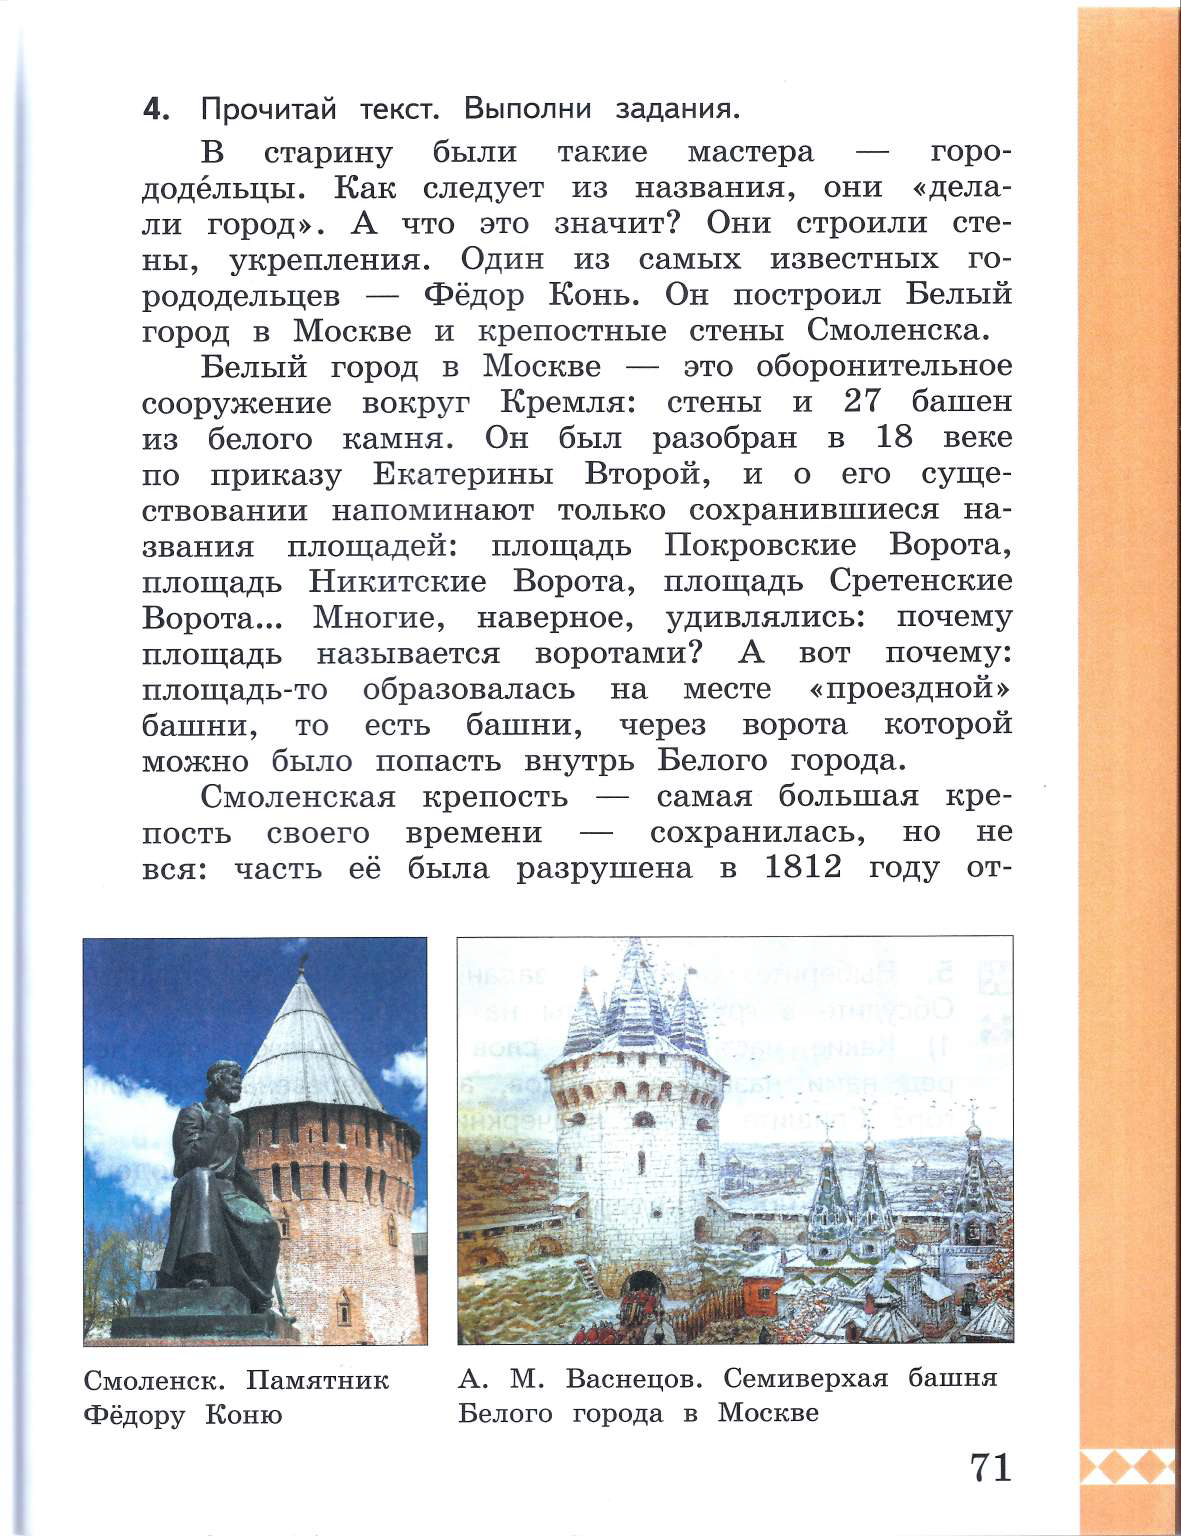 Семиверхая башня белого города в Москве. Семиверхая башня Васнецов. Семиверхая башня почему так называется.